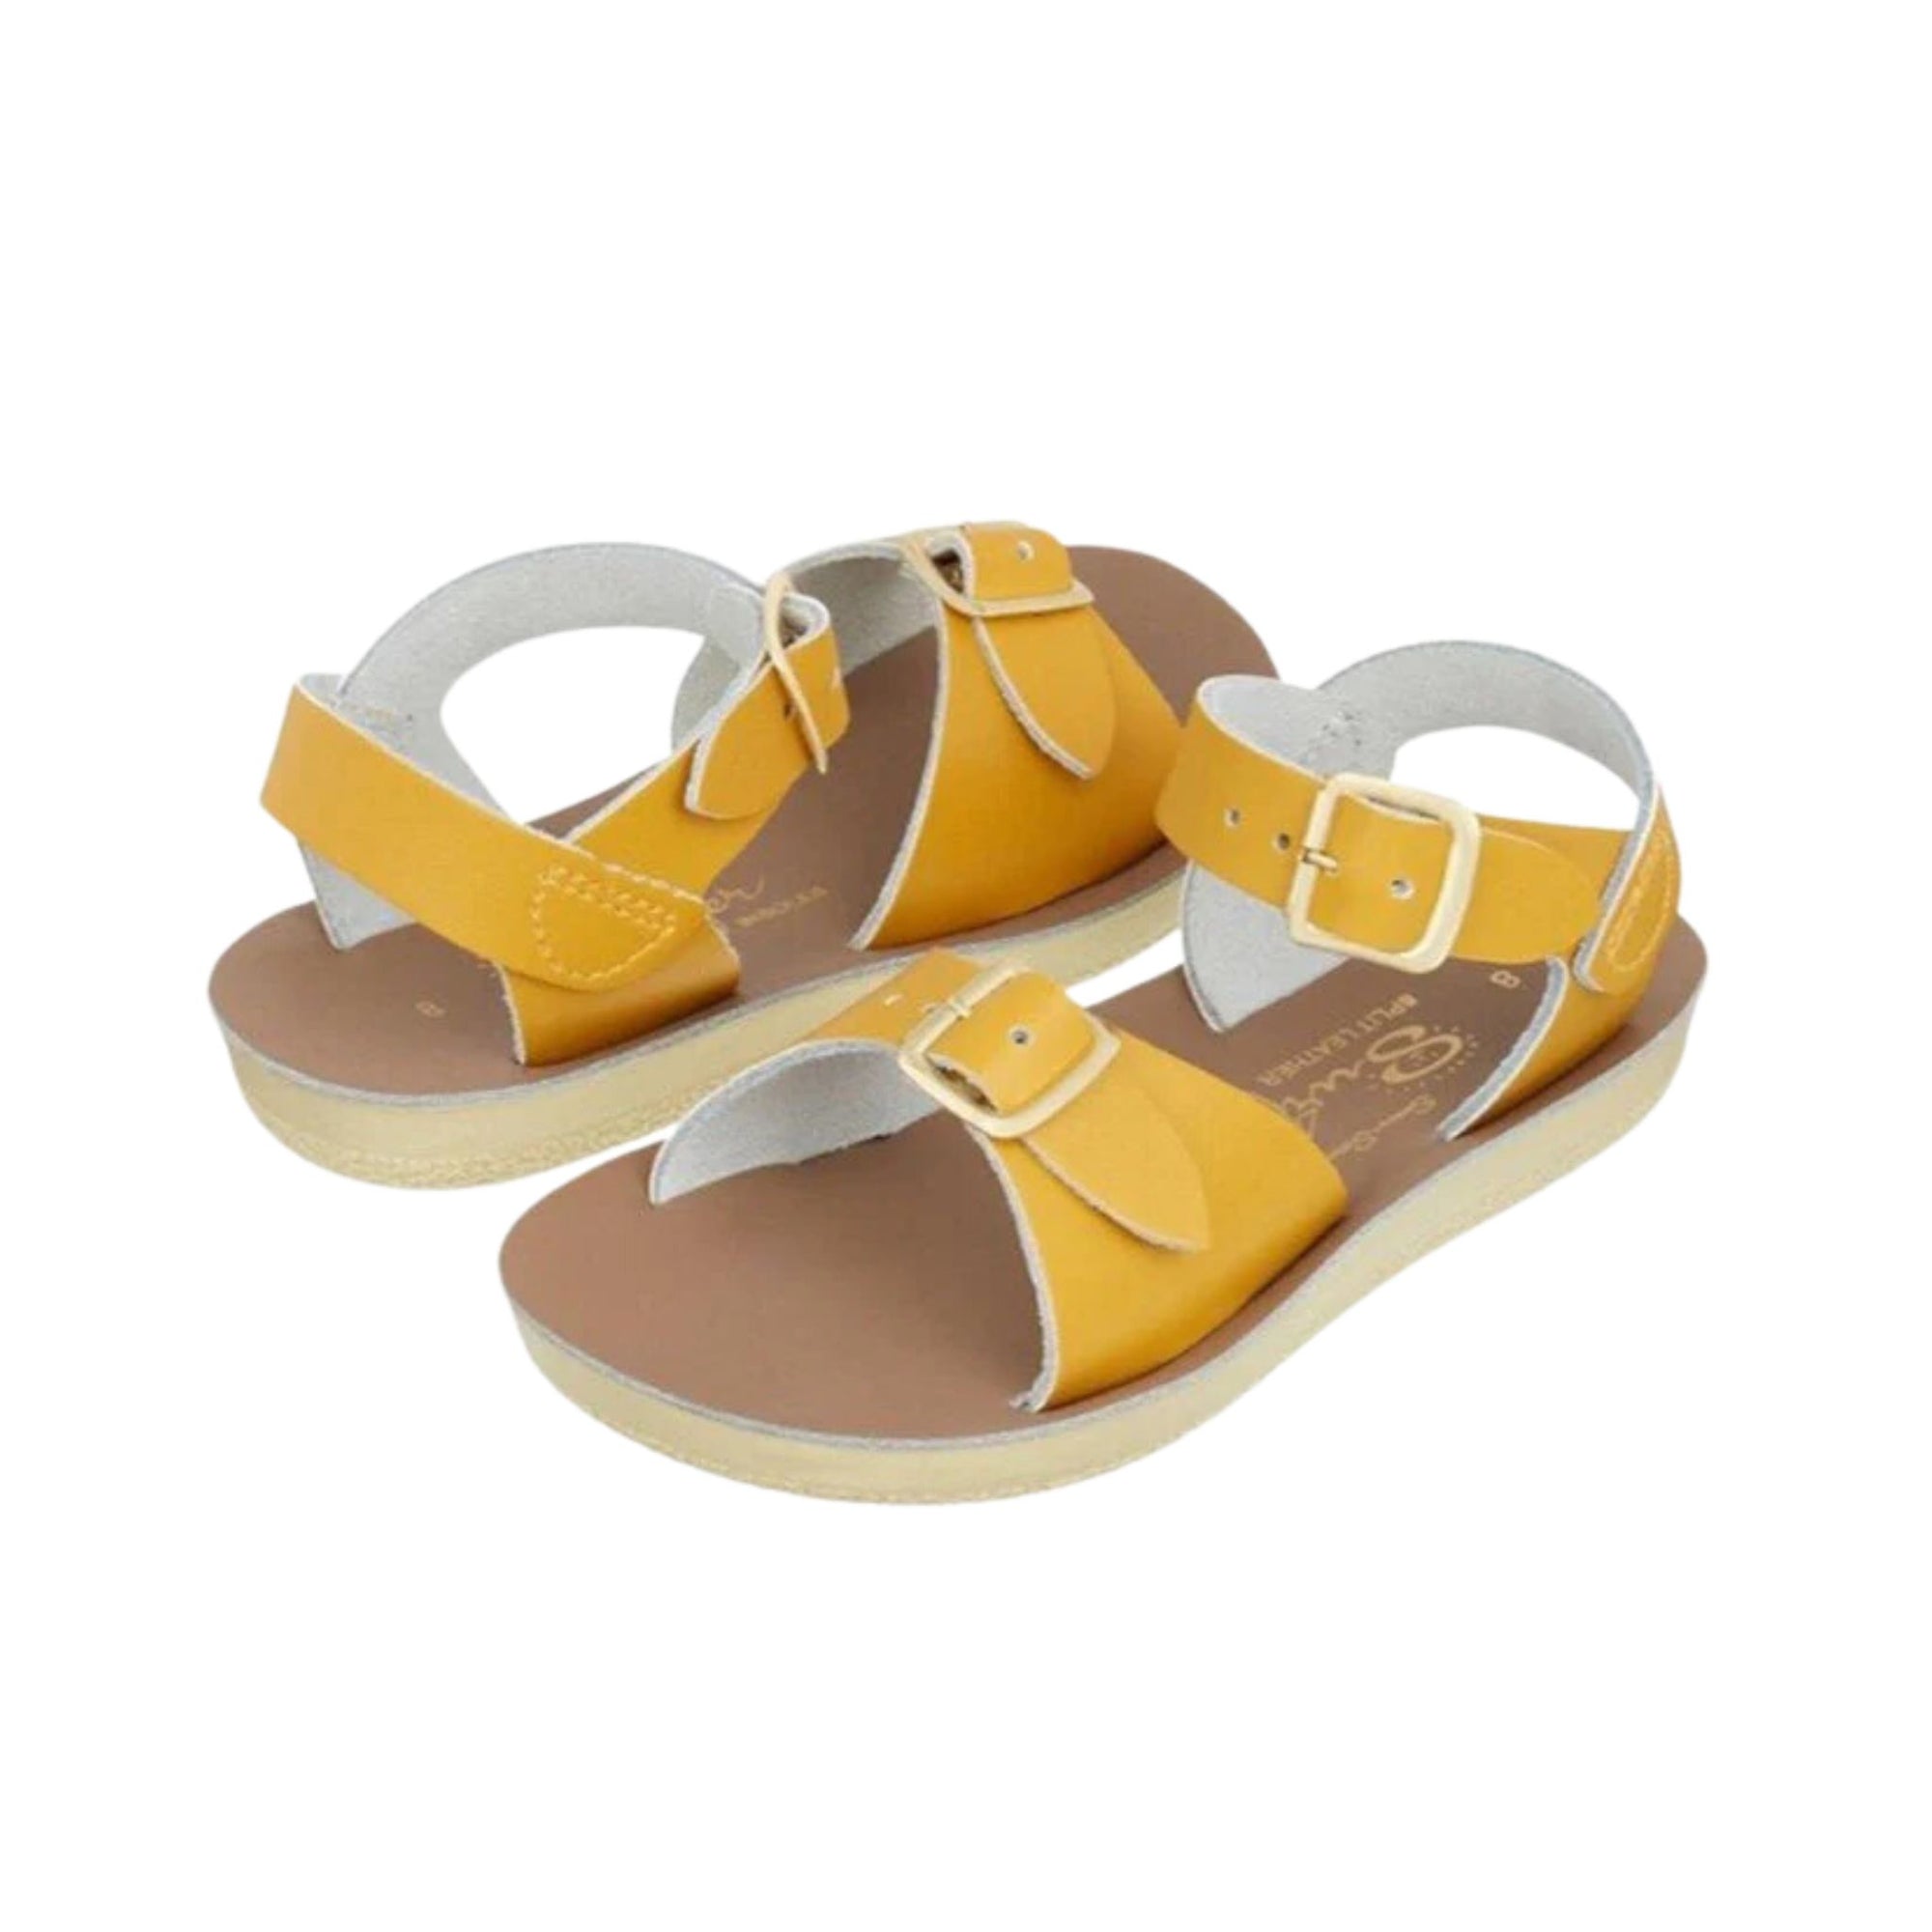 Salt-water Sandals Surfer Sandals - Mustard